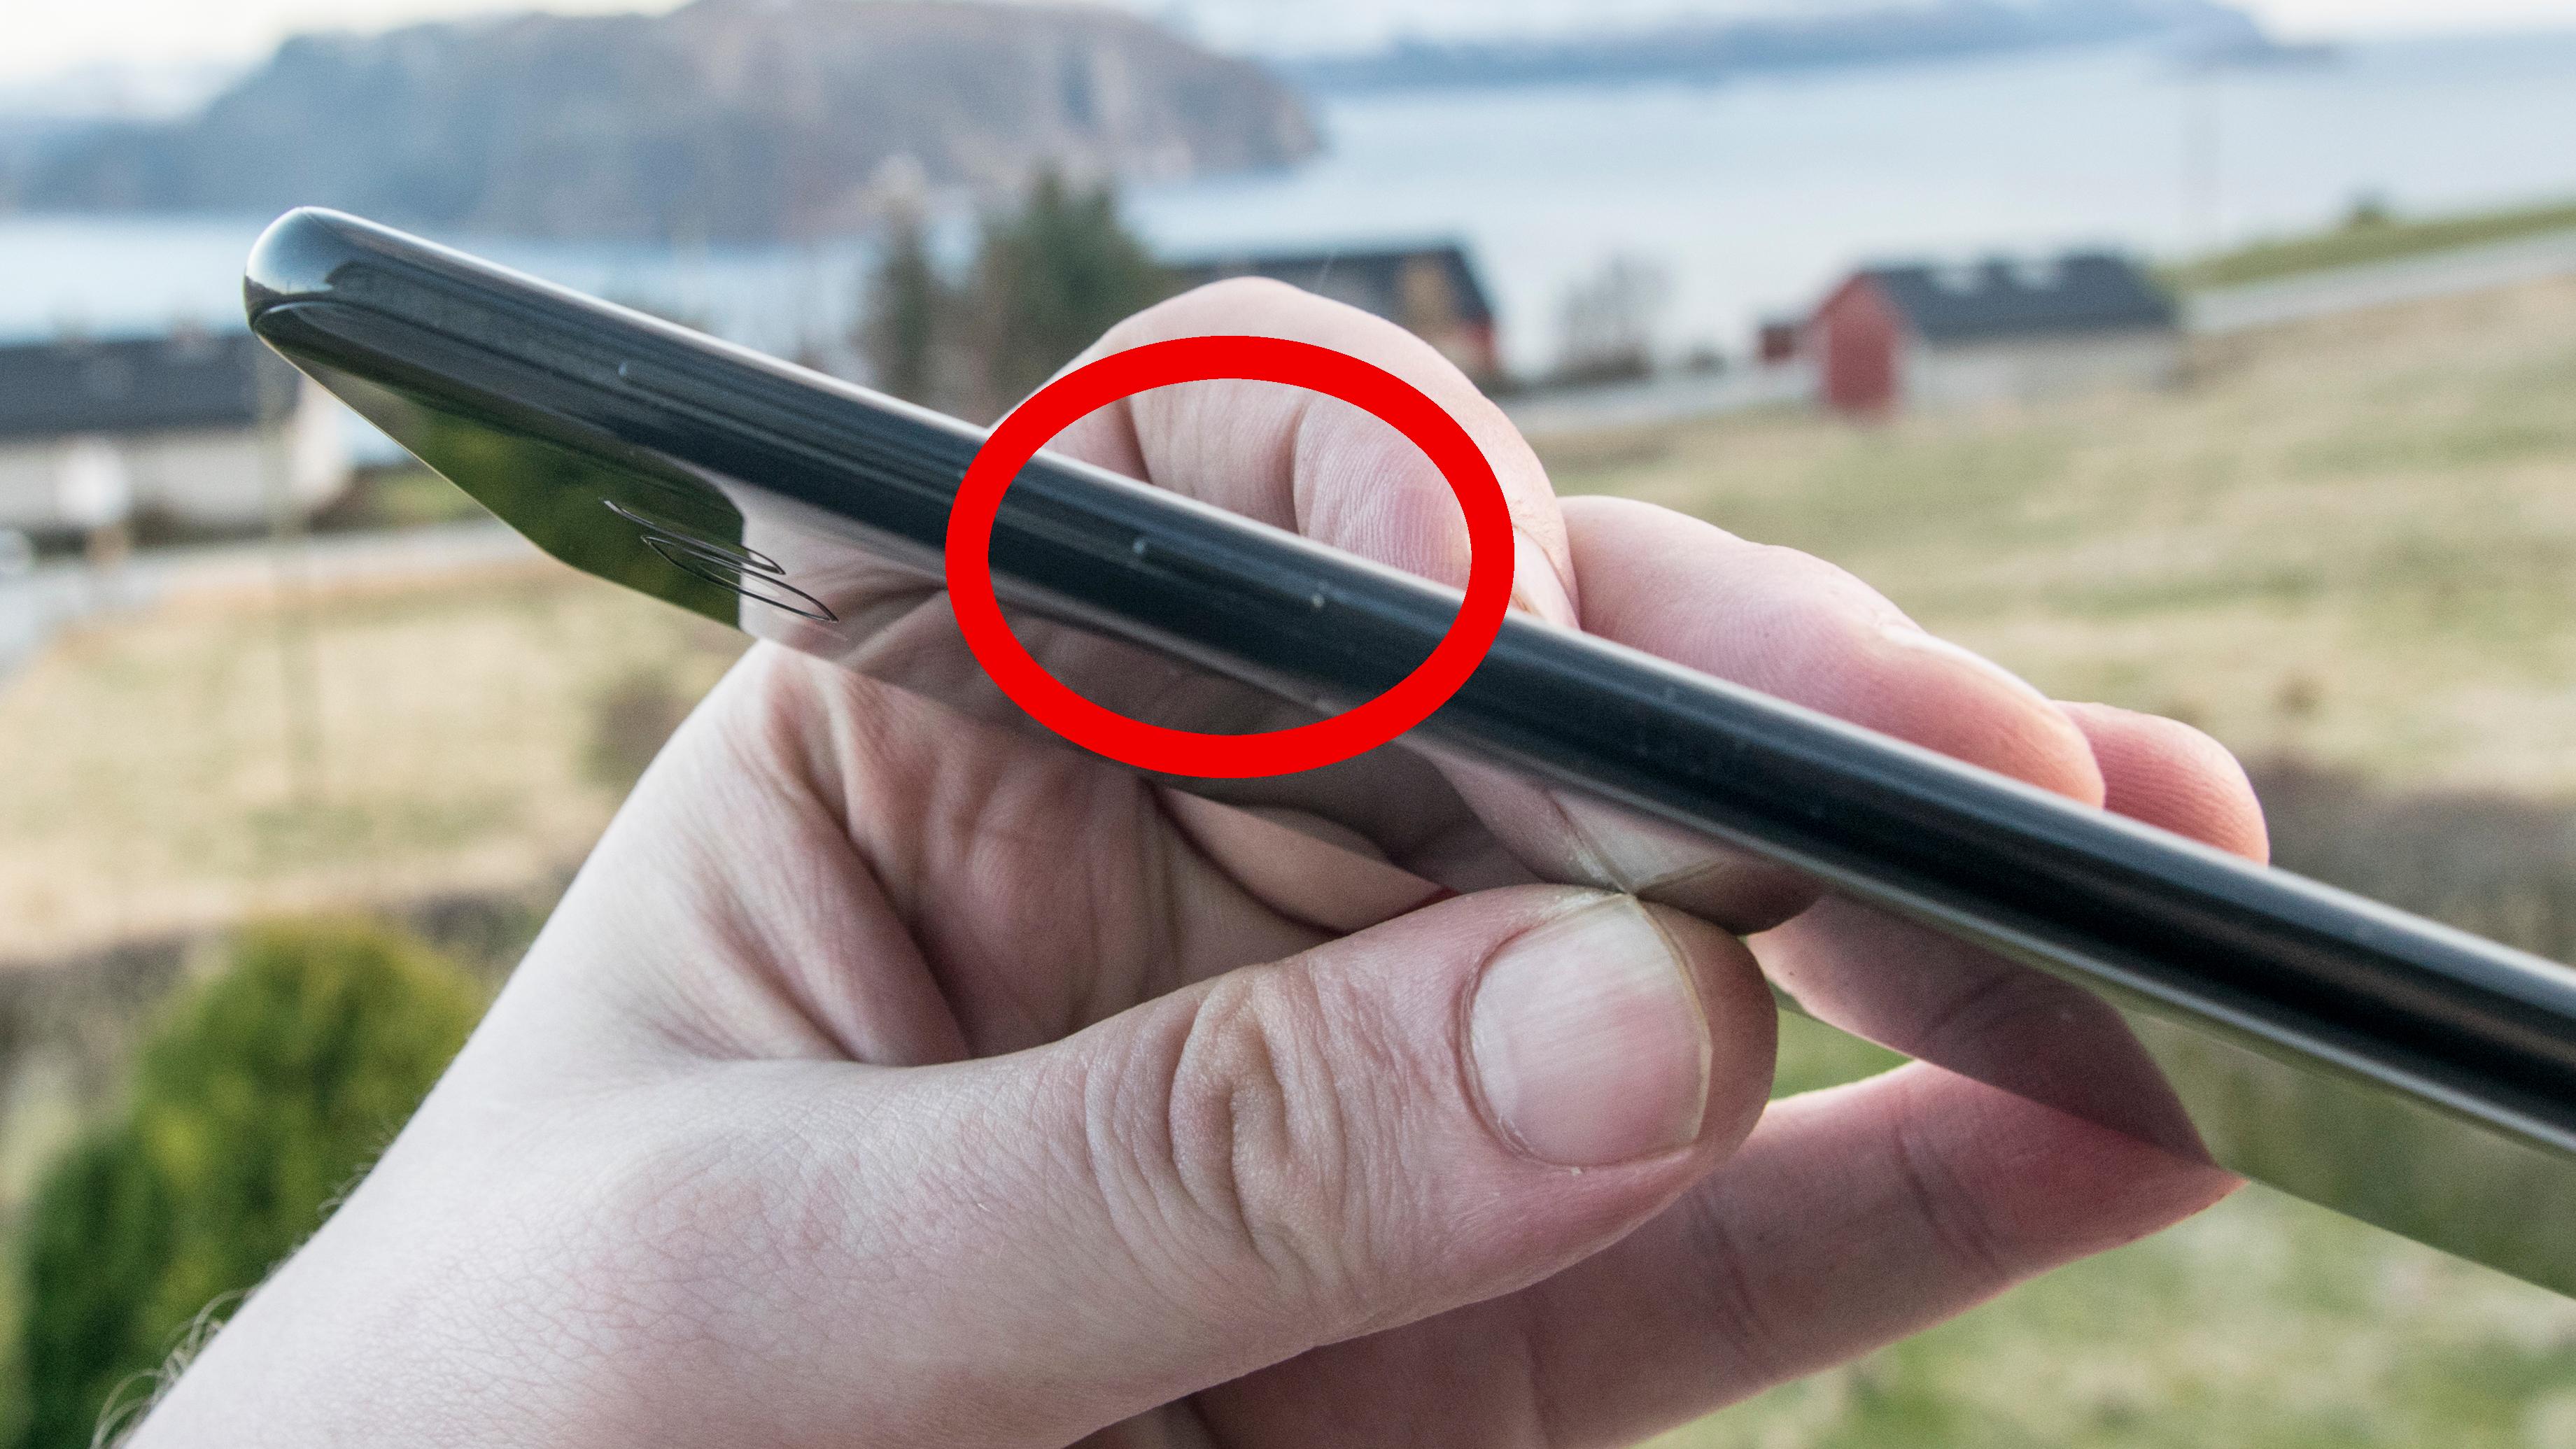 Galaxy S8-eiere vil bruke Bixby-knappen til andre ting – det vil ikke Samsung ha noe av